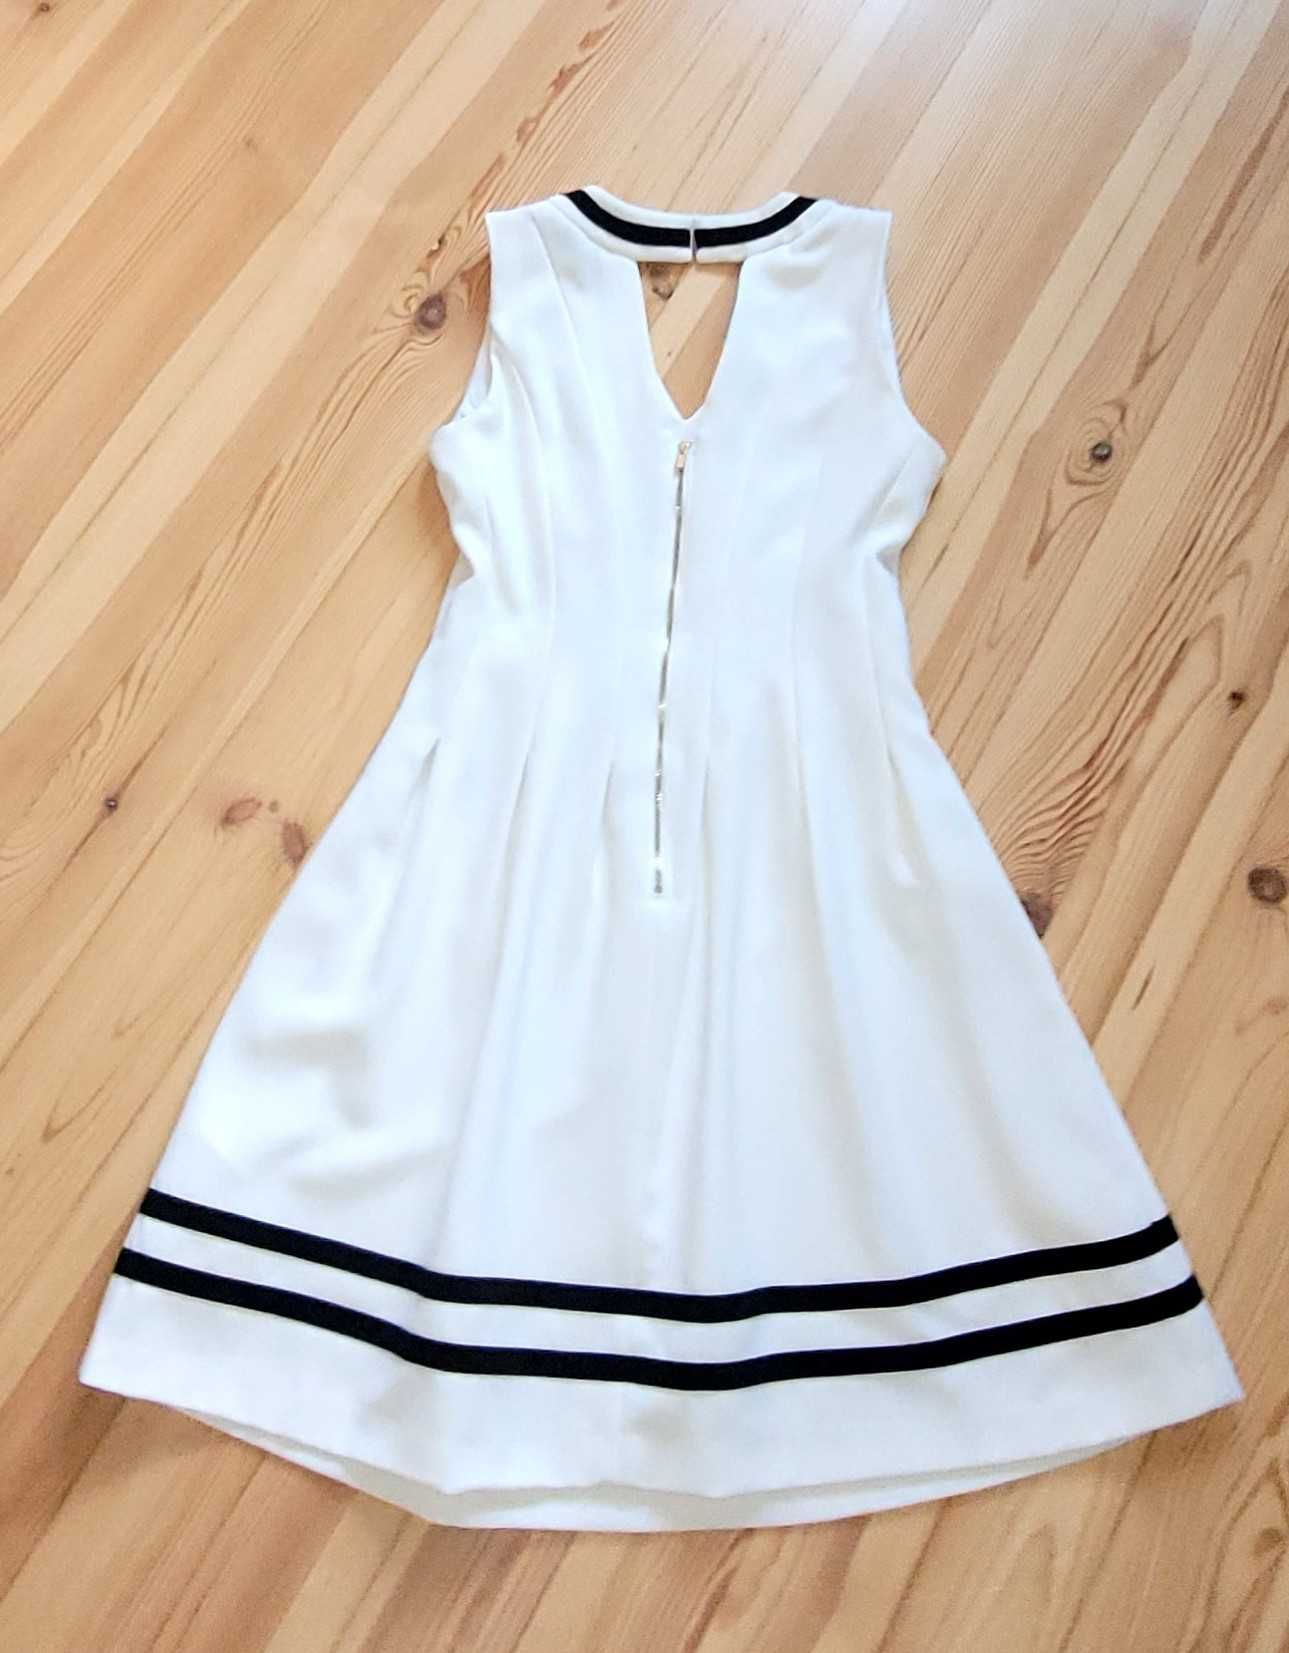 H&M biała plisowana sukienka elegancka rozłożysta M/L